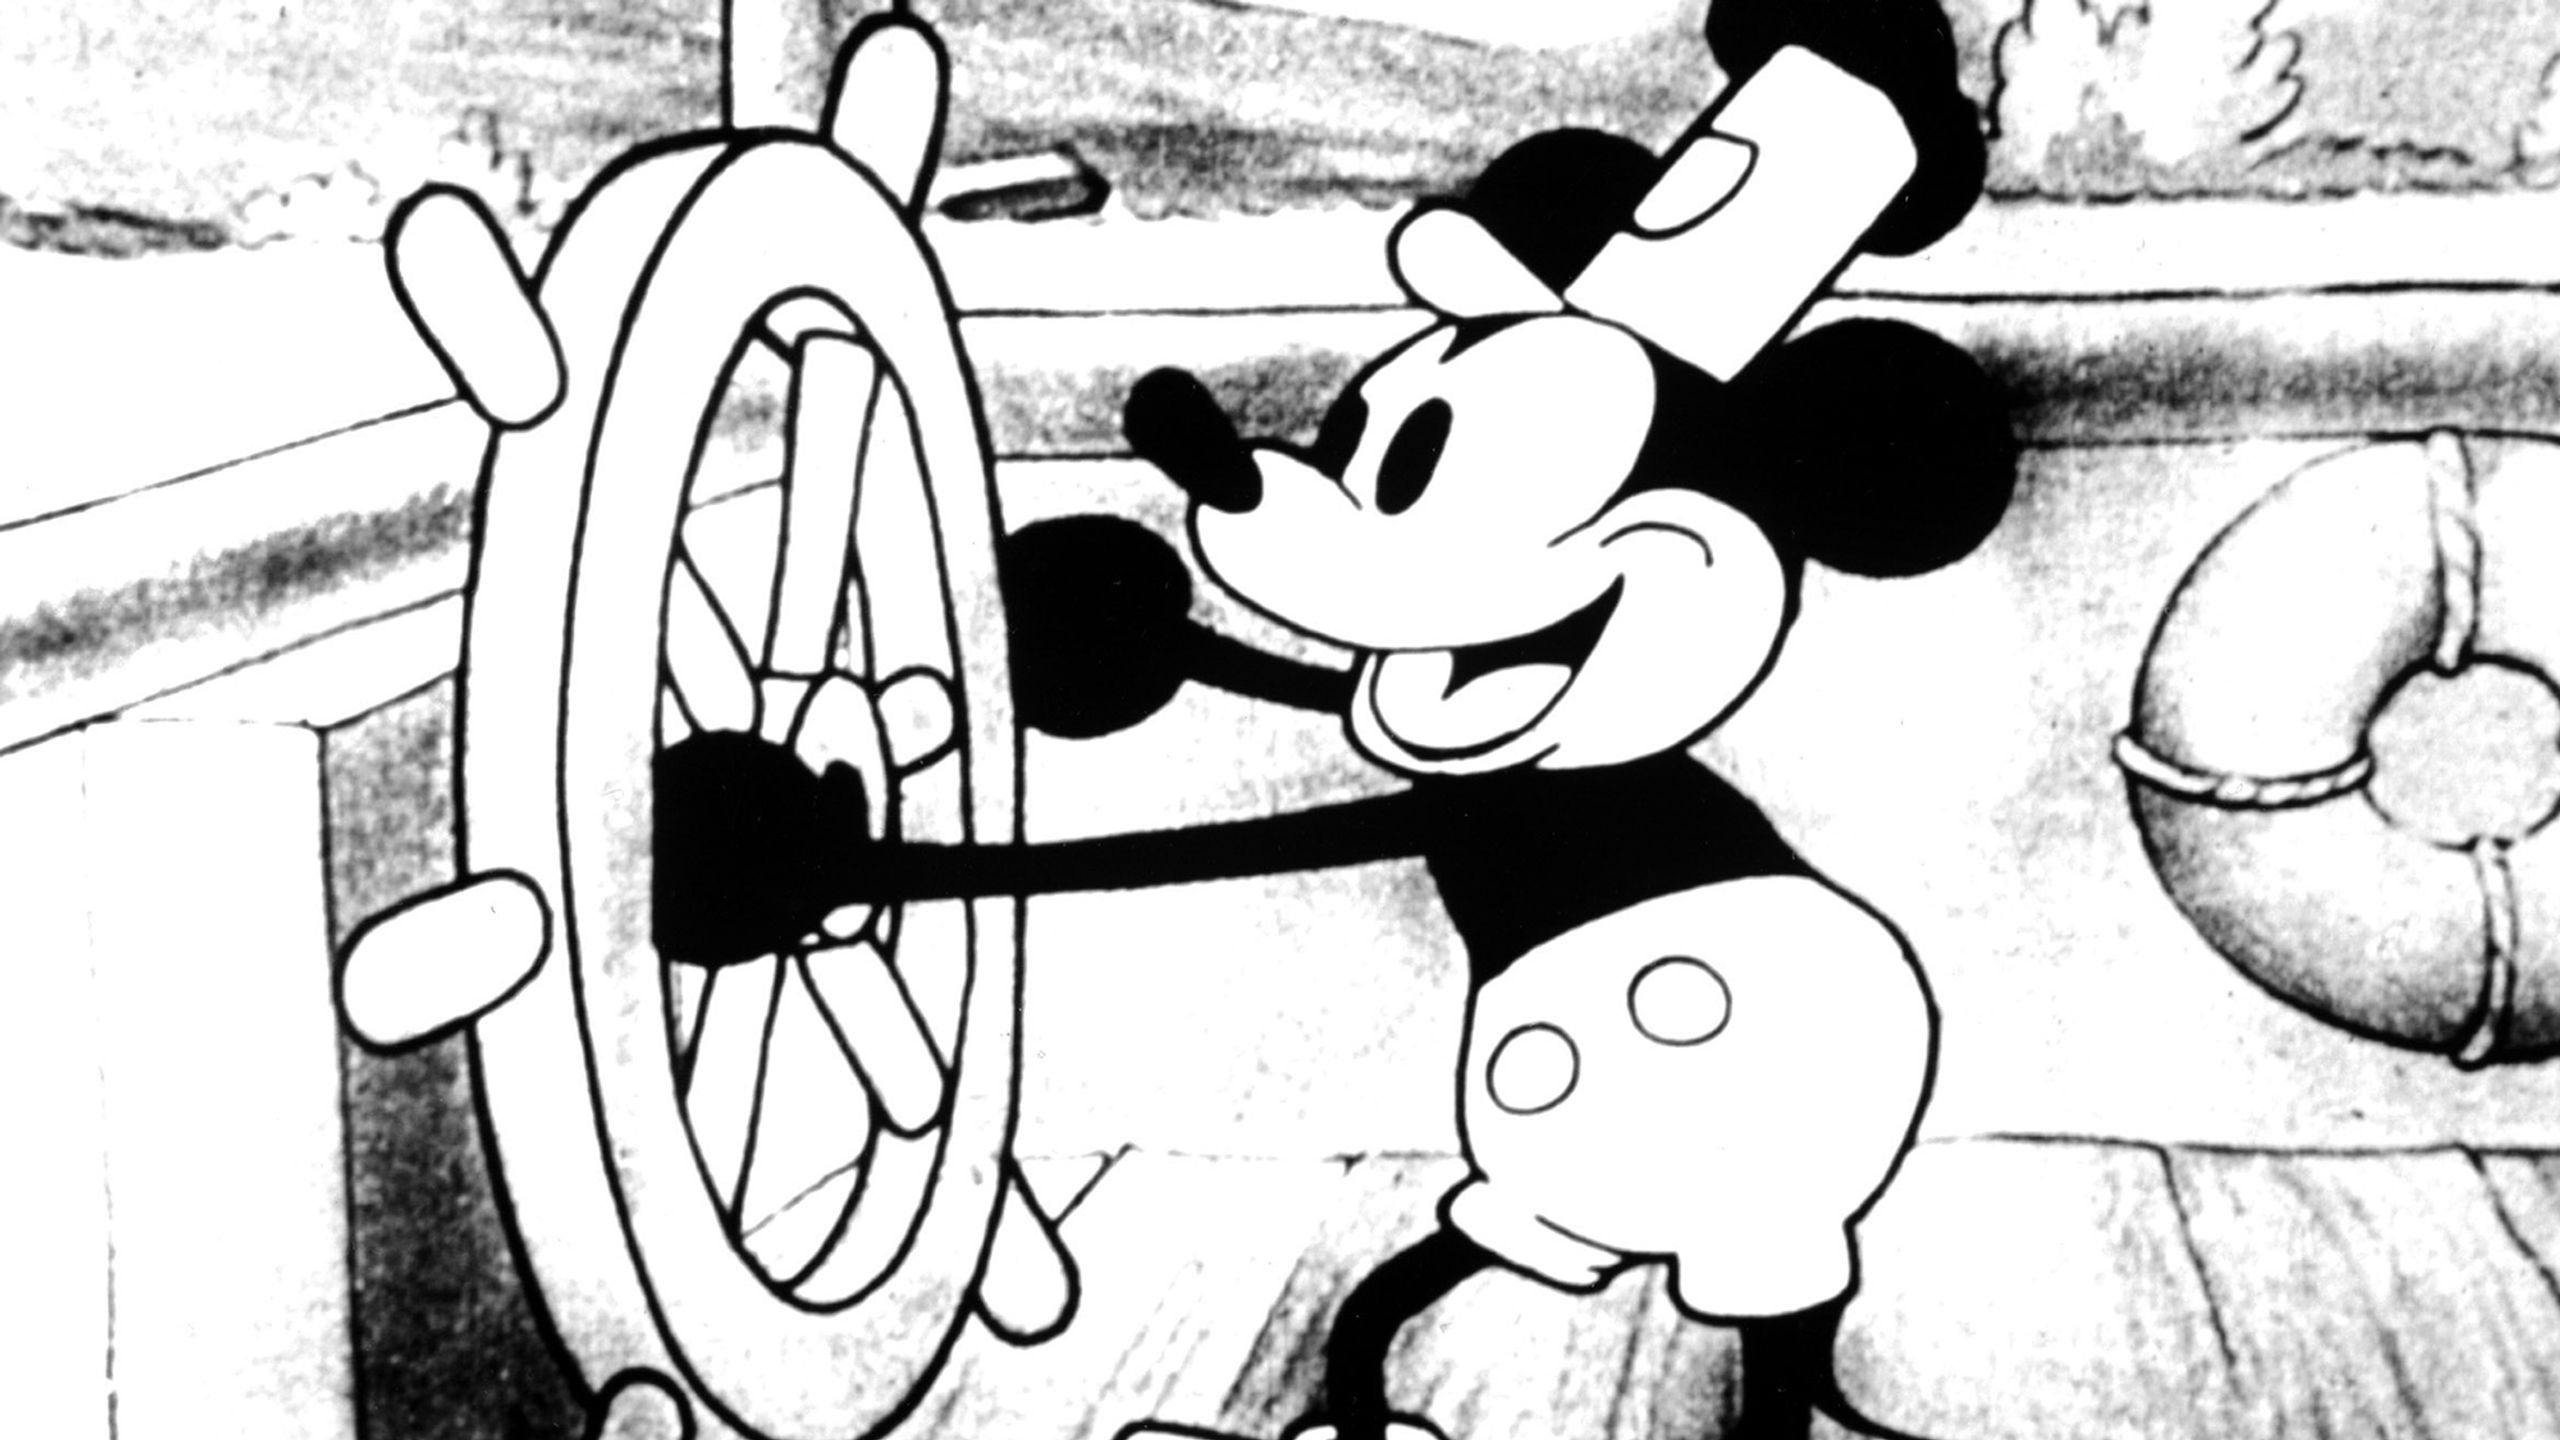 Fotograma de la primera aparición de Mickey Mouse en el corto ‘Steamboat Willie’, de 1928, que el 1 de enero pasará a ser de dominio público